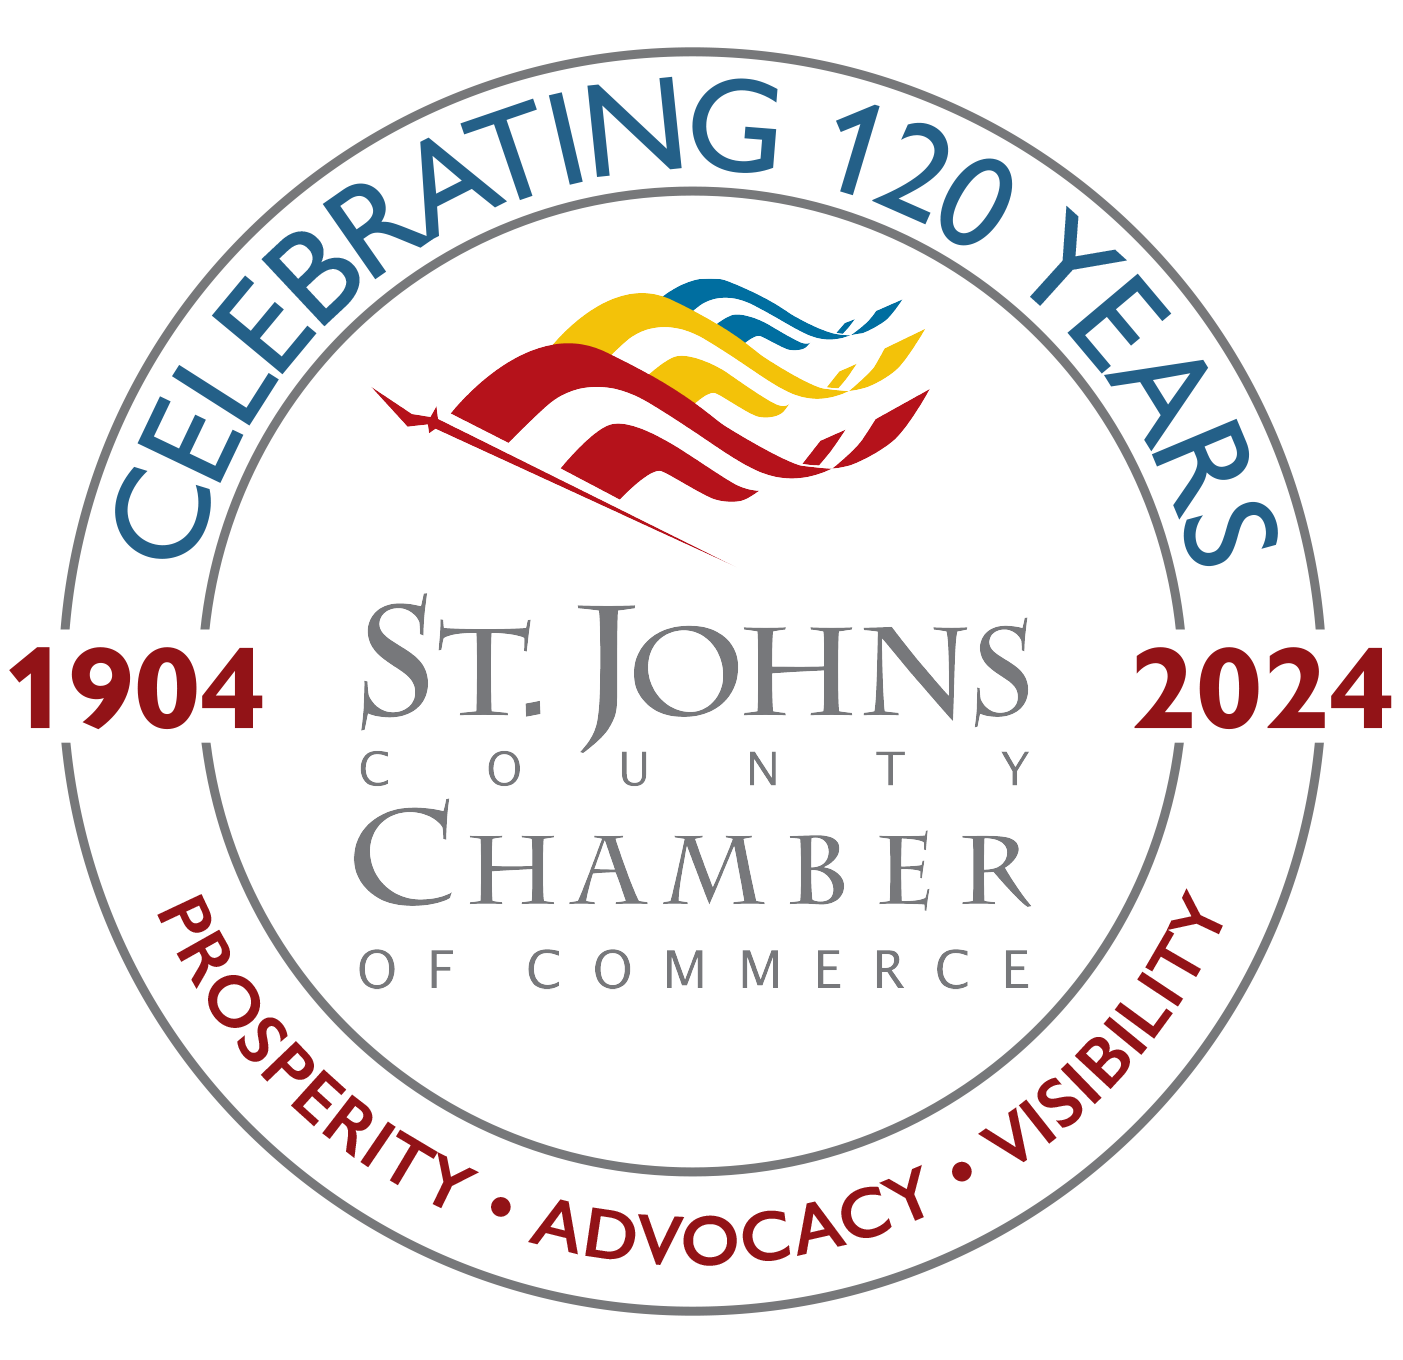 Chamber celebrates 120 years